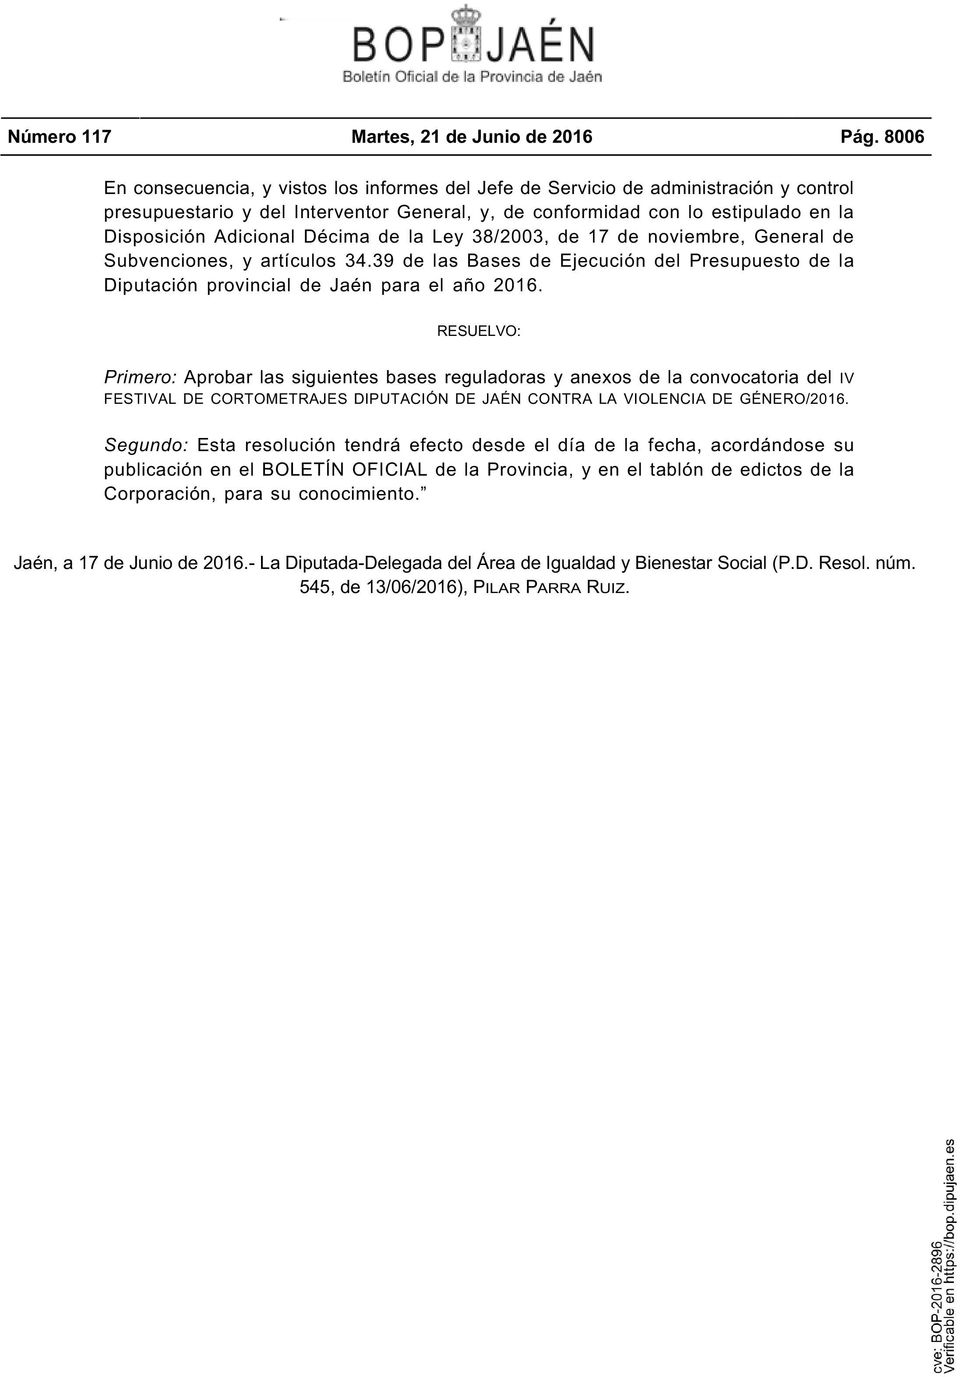 Décima de la Ley 38/2003, de 17 de noviembre, General de Subvenciones, y artículos 34.39 de las Bases de Ejecución del Presupuesto de la Diputación provincial de Jaén para el año 2016.